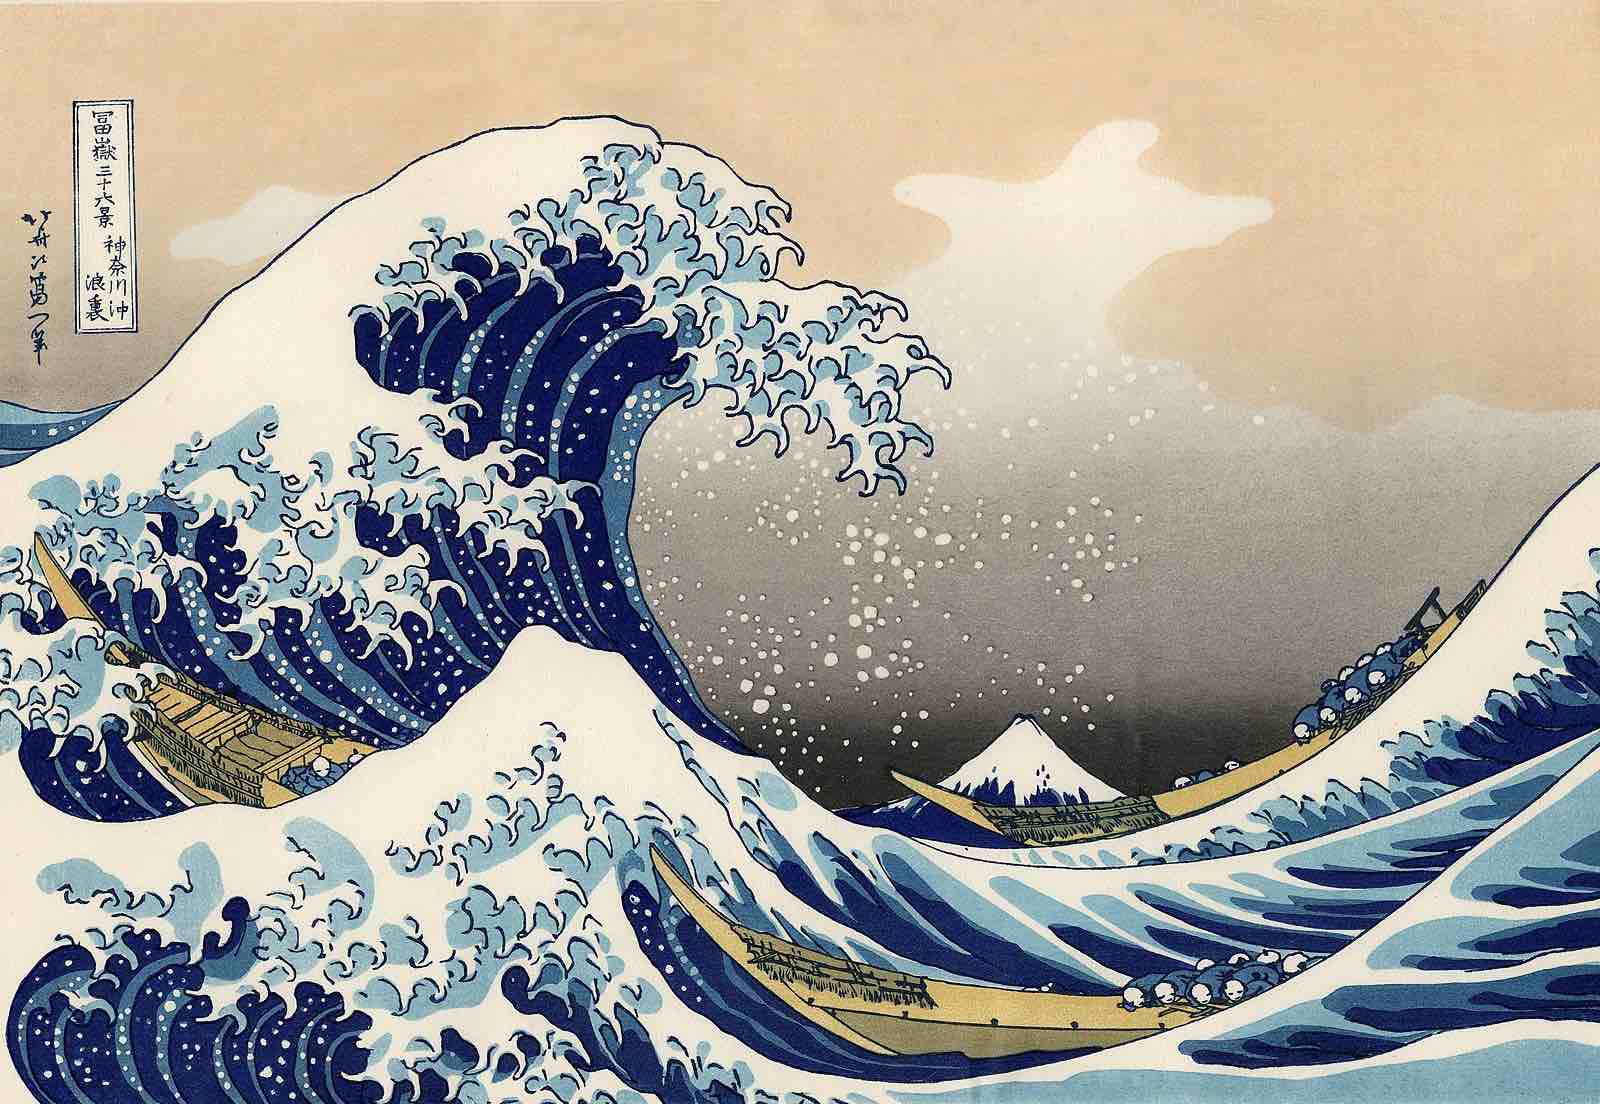 Tsunami in Giappone: Come si Formano e Cosa Fare in Caso di Emergenza